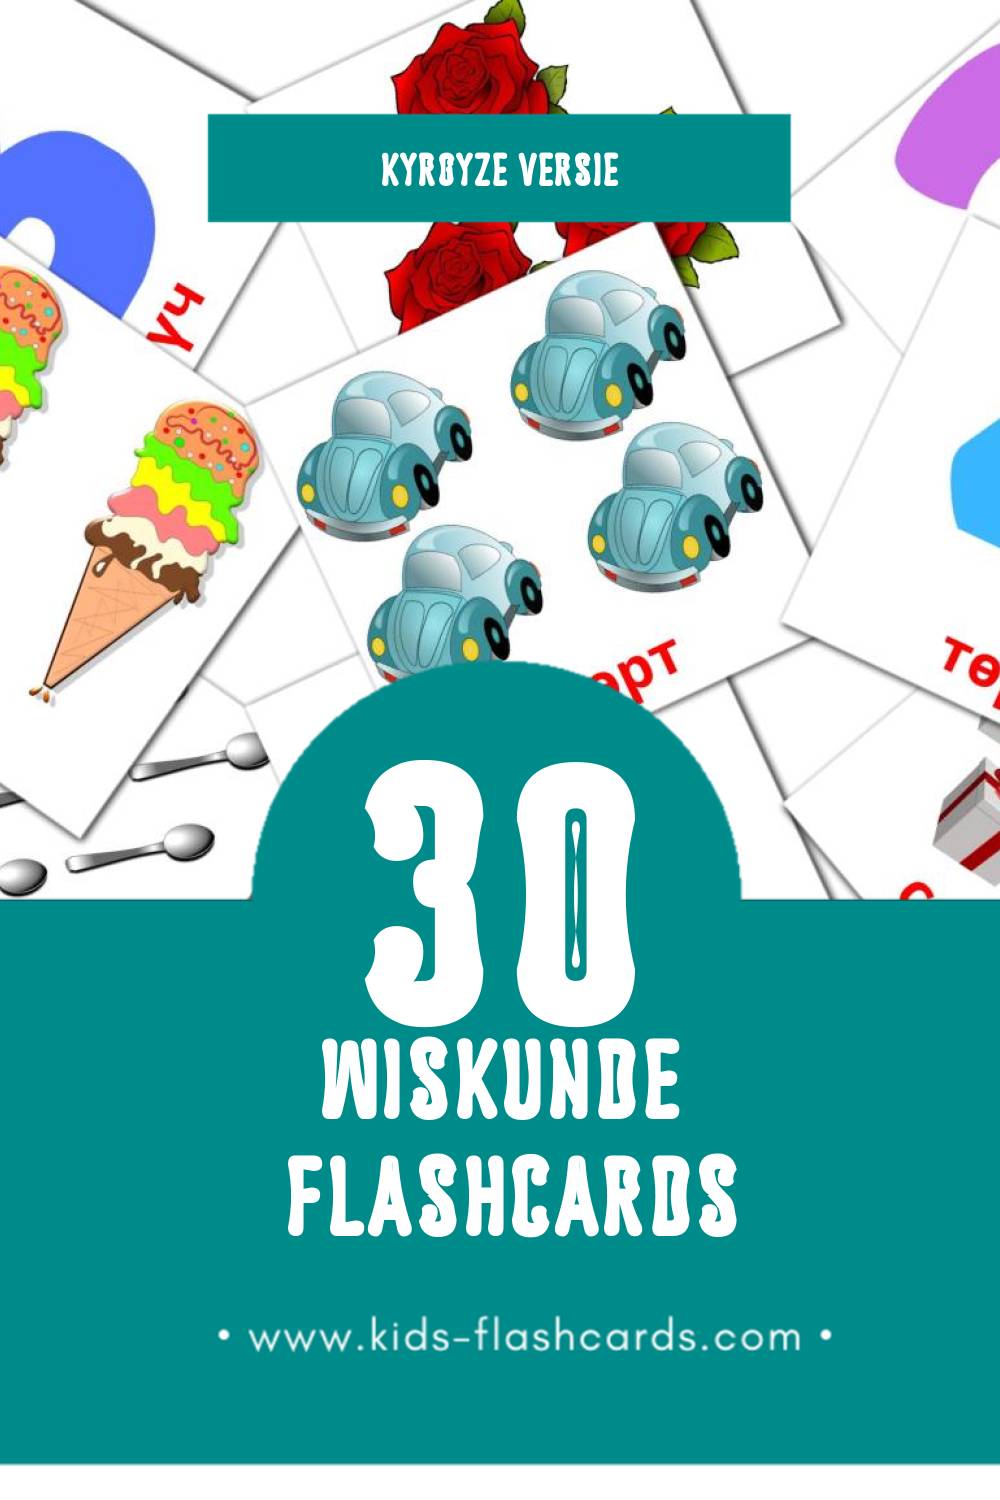 Visuele Математика Flashcards voor Kleuters (30 kaarten in het Kyrgyz)